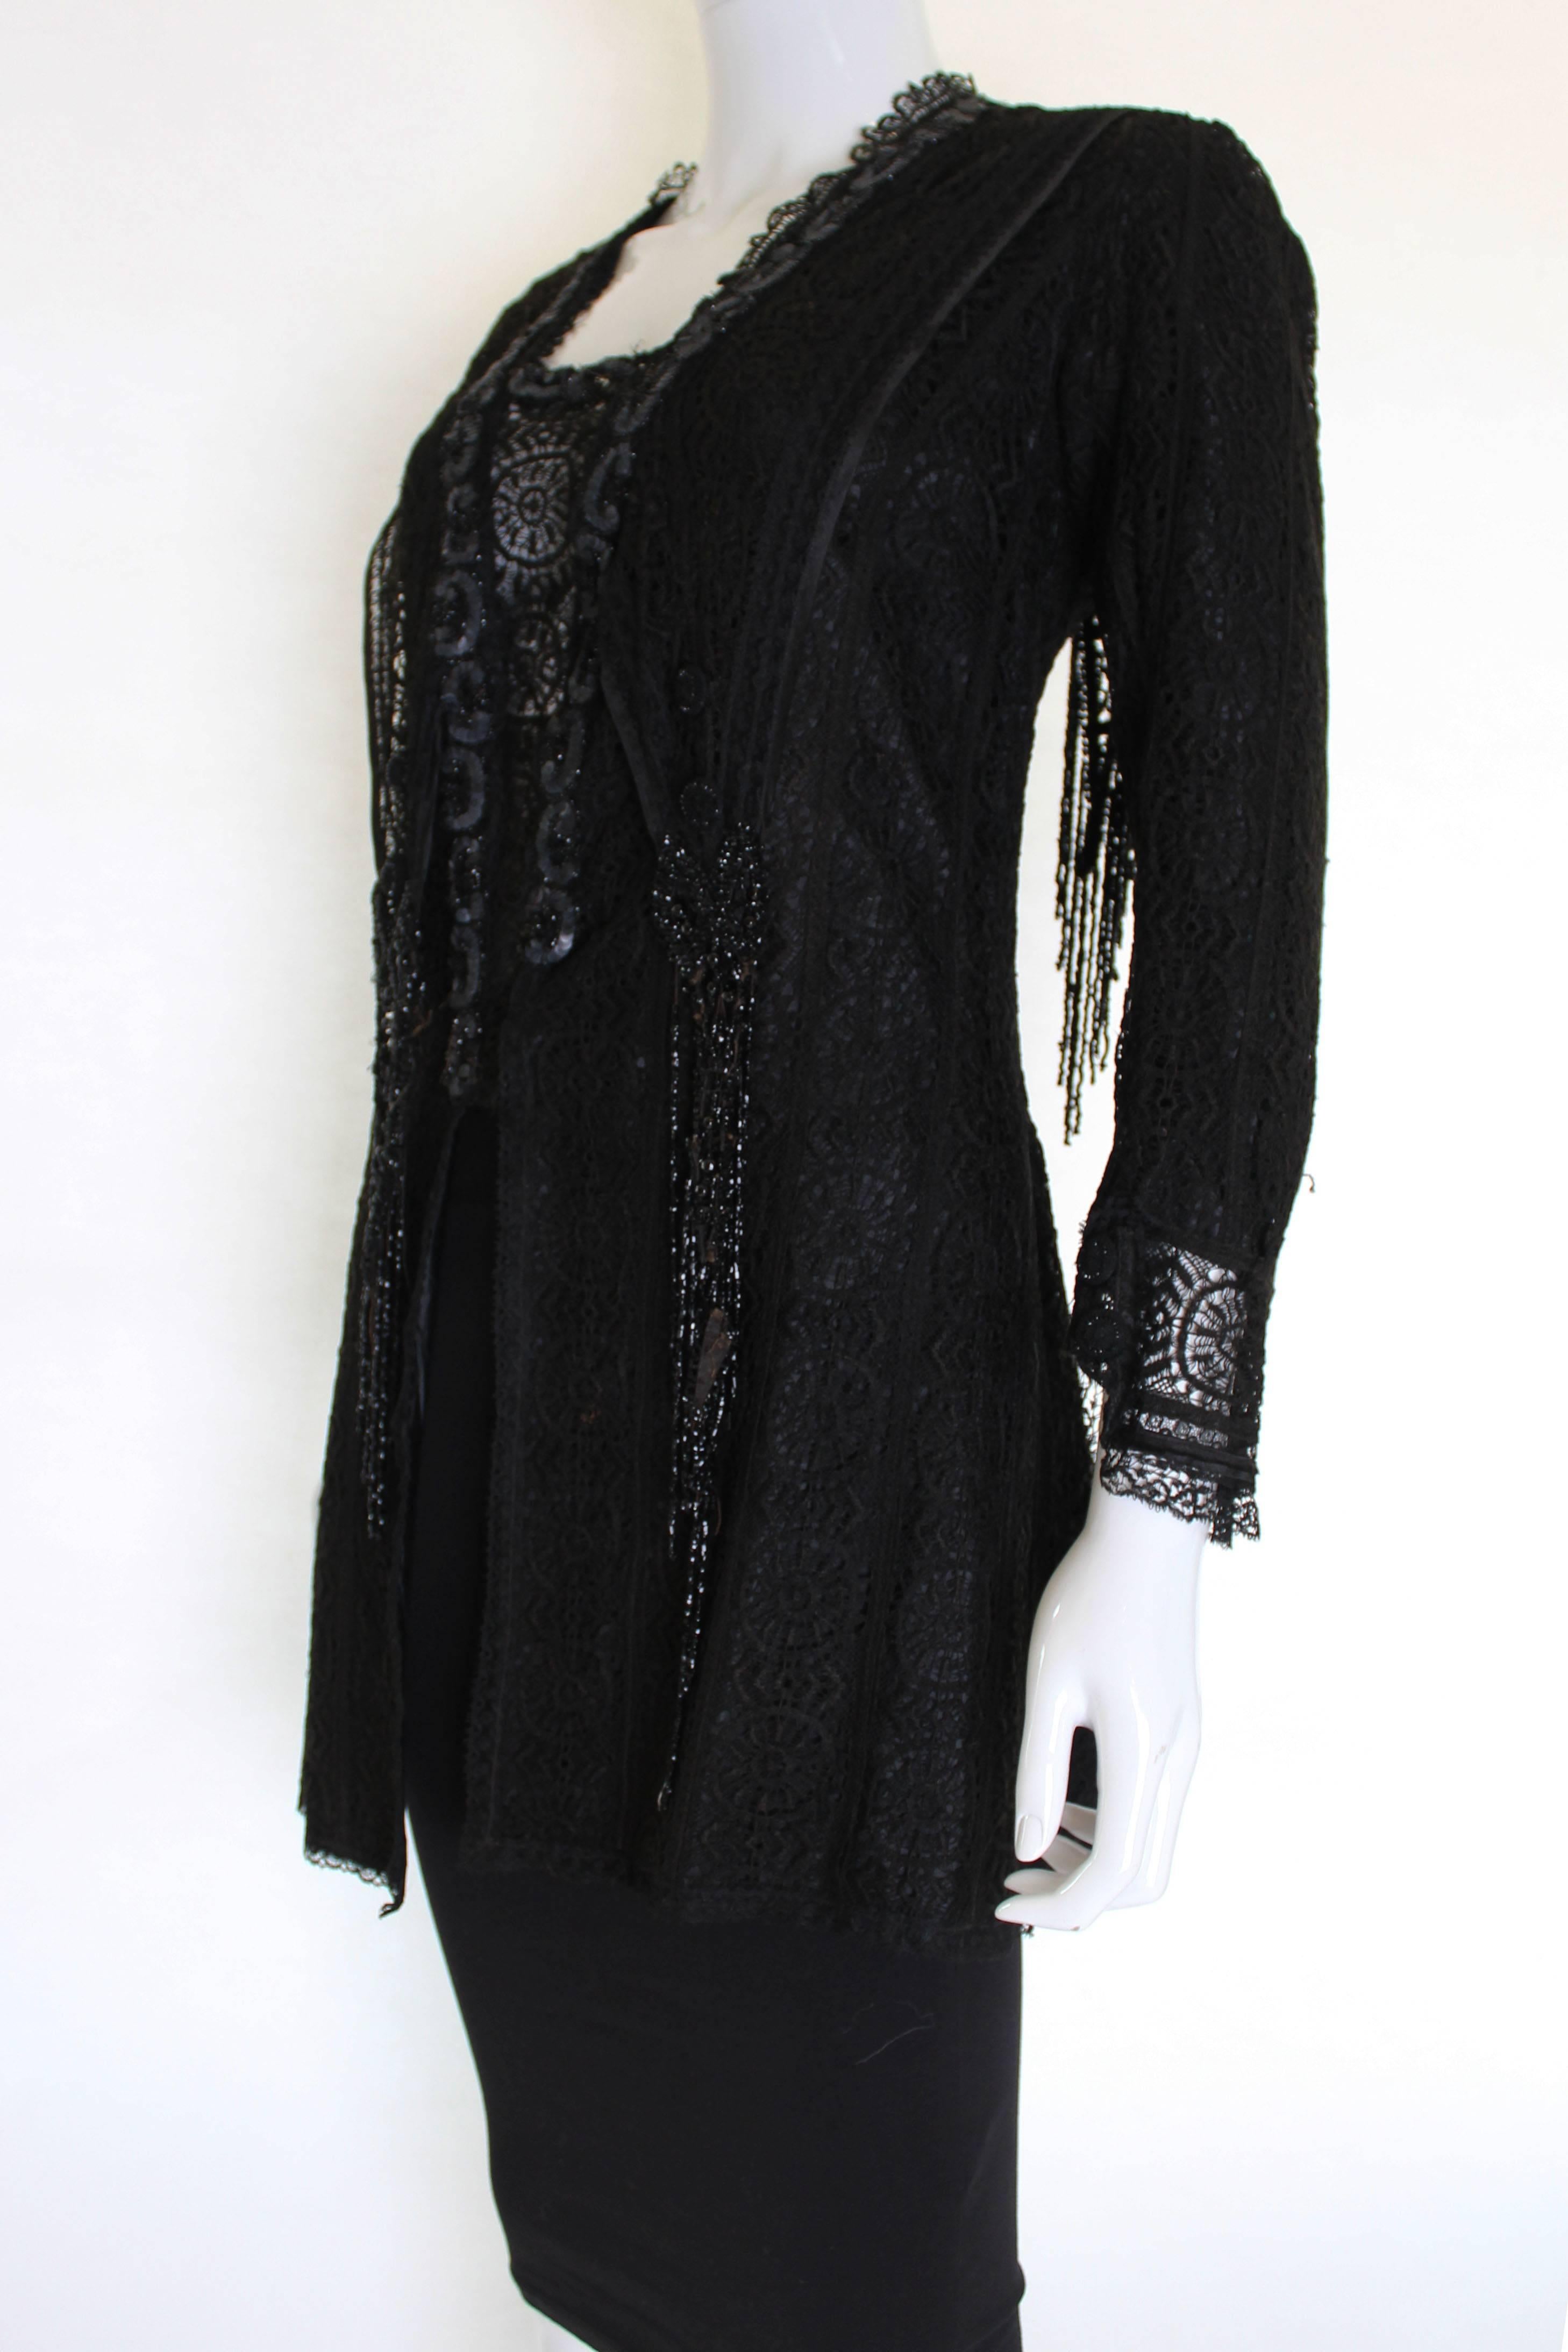 Il s'agit d'une merveilleuse veste victorienne en dentelle noire, toujours dans un état délicat mais portable. Le matériau principal est la dentelle, et la veste est entièrement doublée en soie avec des poids dans l'ourlet pour donner une grande